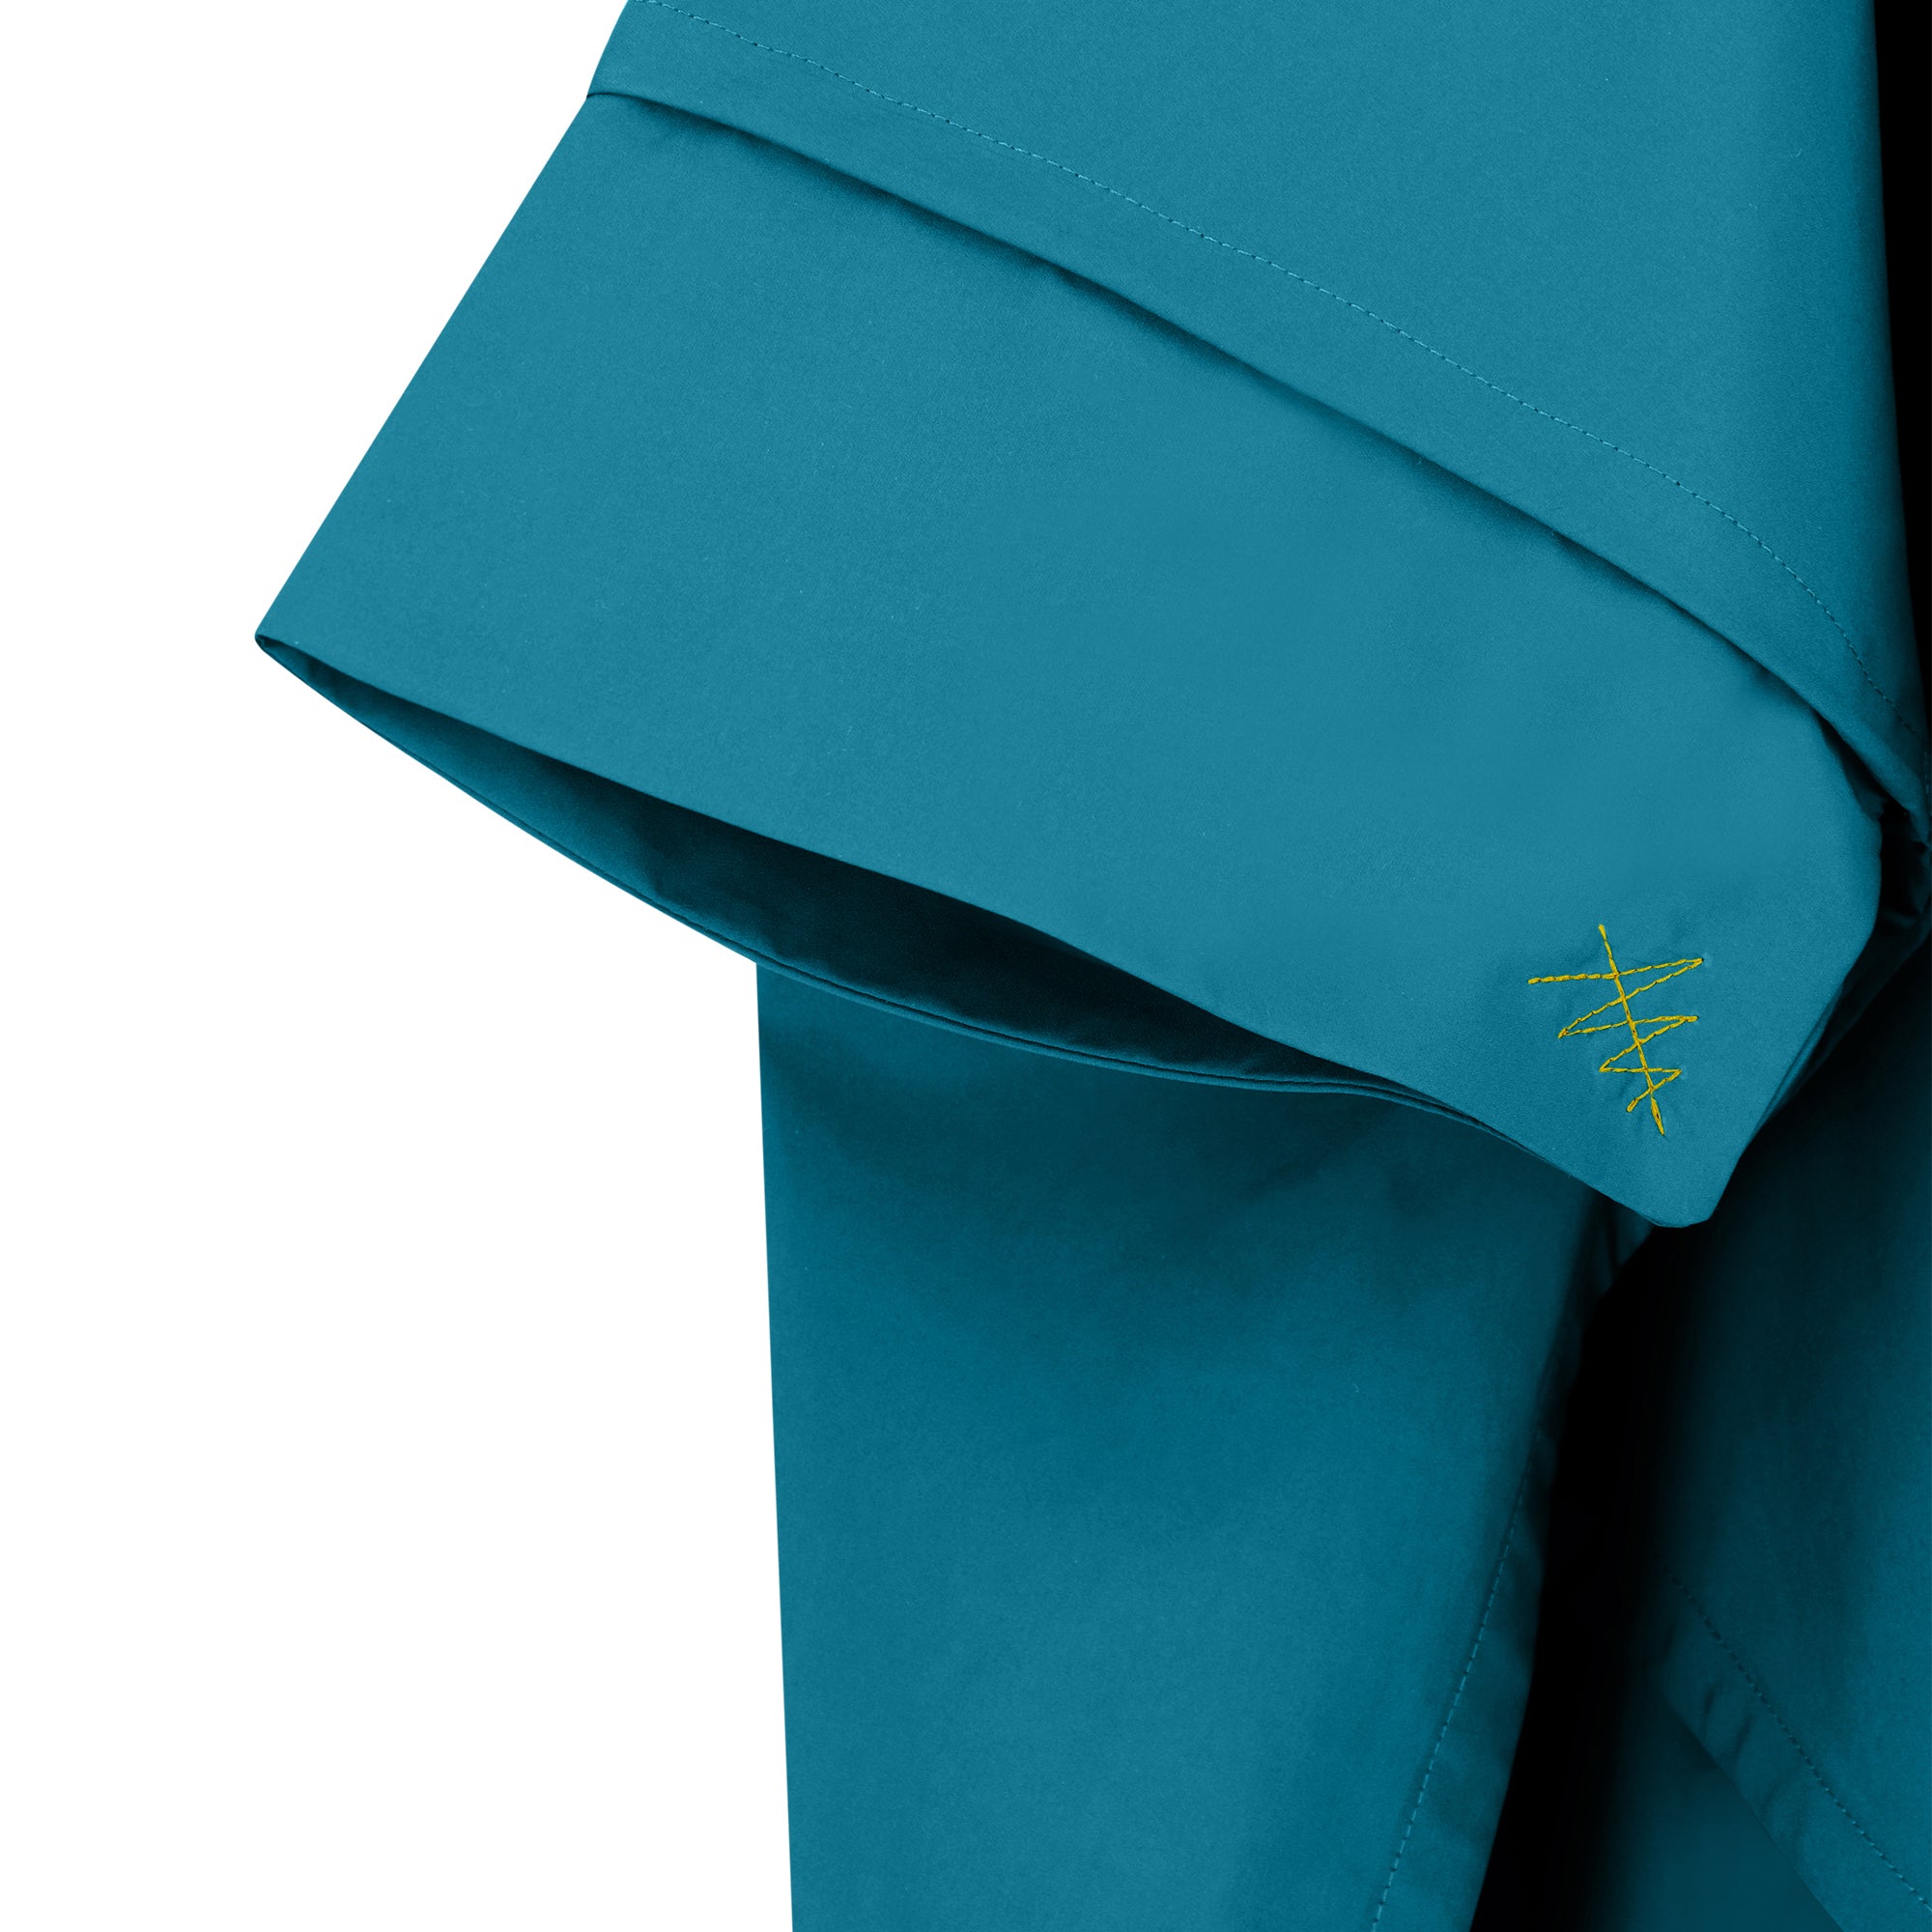 Cape Town raincoat - ocean blue color - sleeve detail